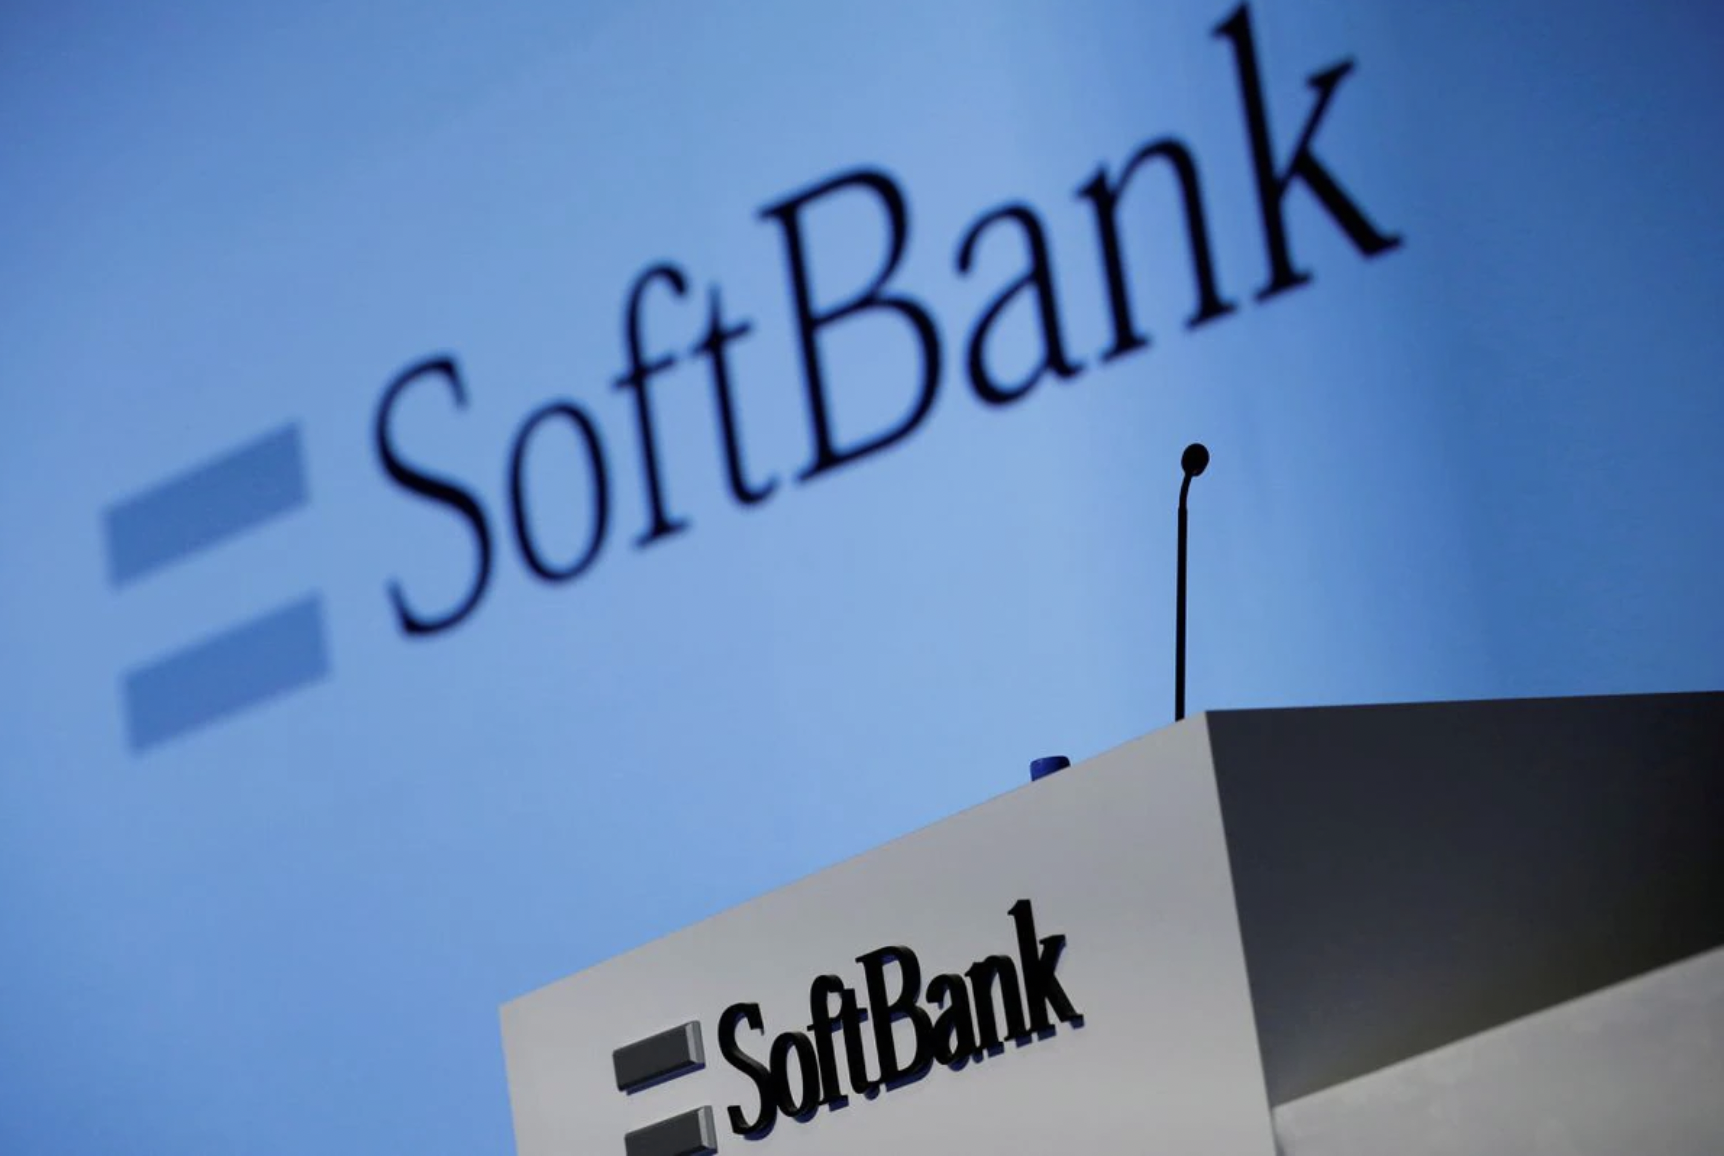 Đường đua metaverse 'đỏ lửa' khi SoftBank rót 93 triệu USD vào game NFT - Ảnh 1.